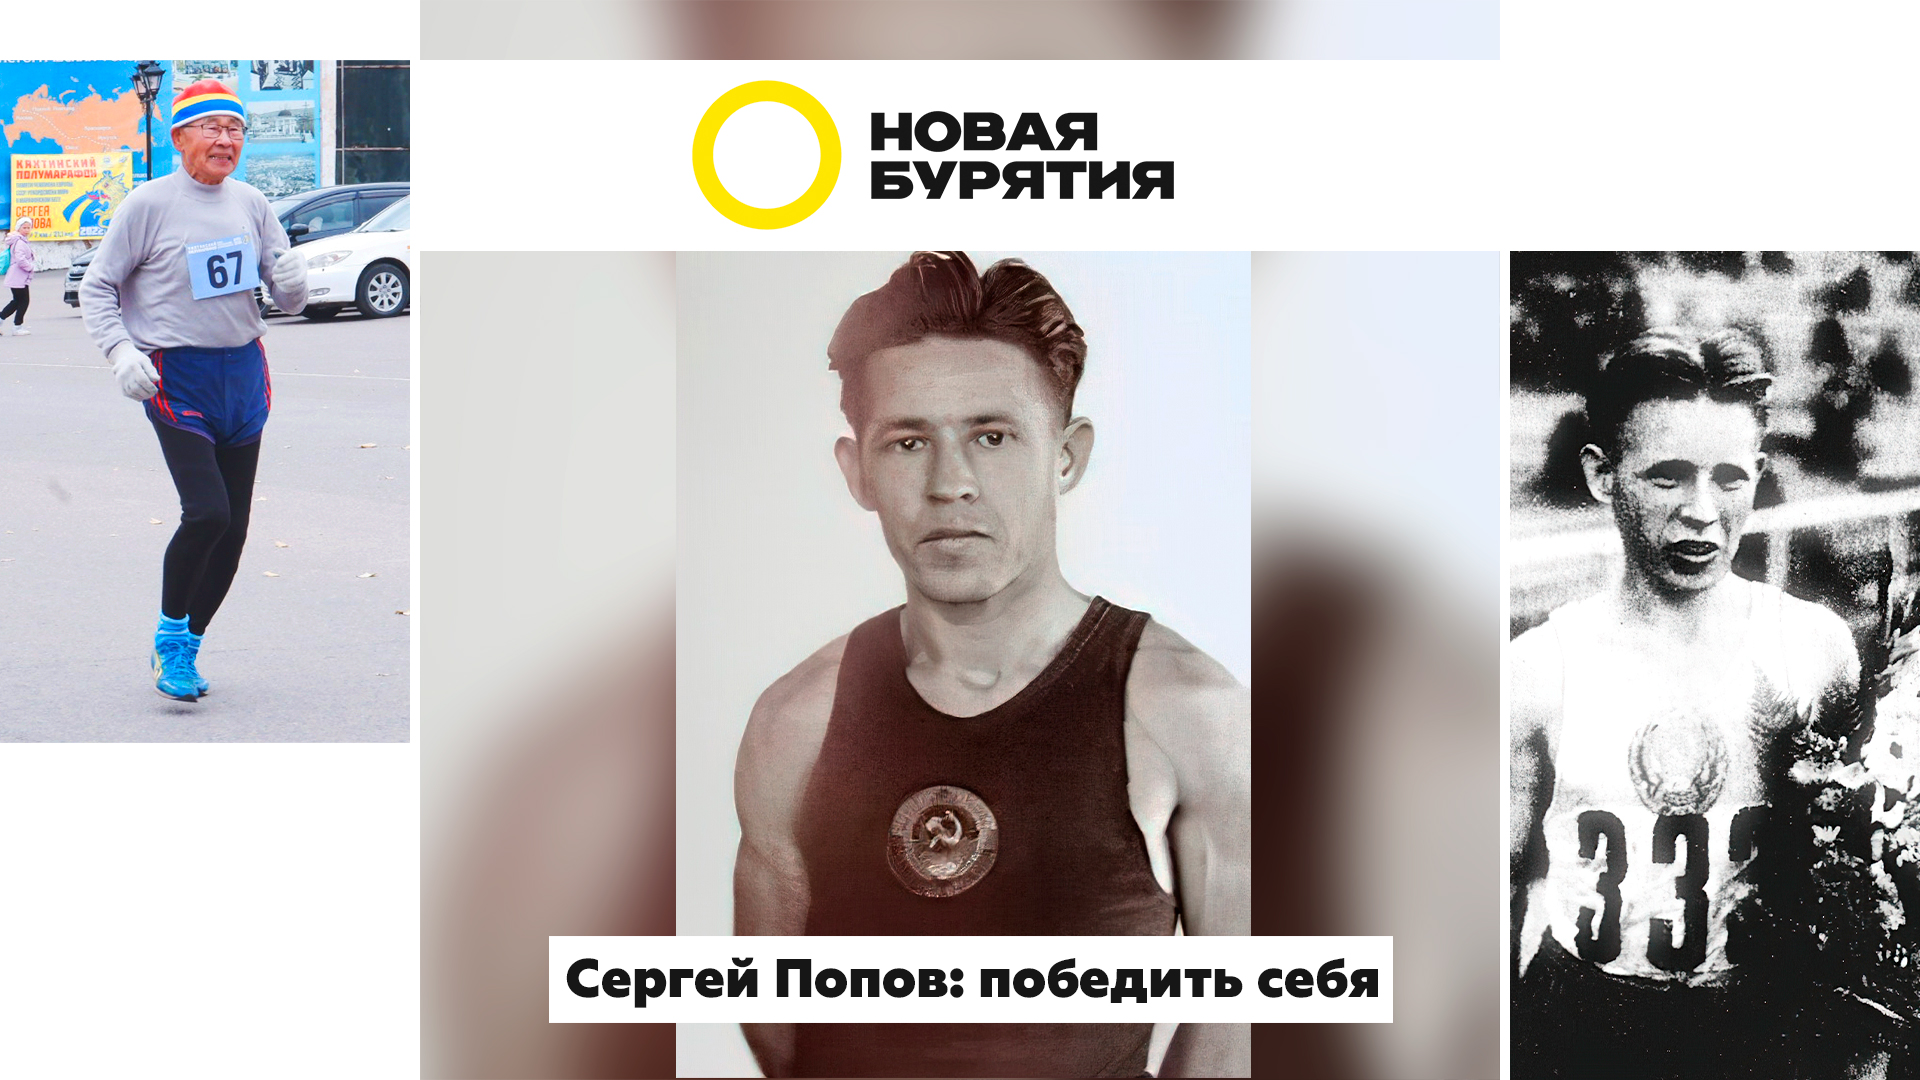 Сергей Попов. Победить себя